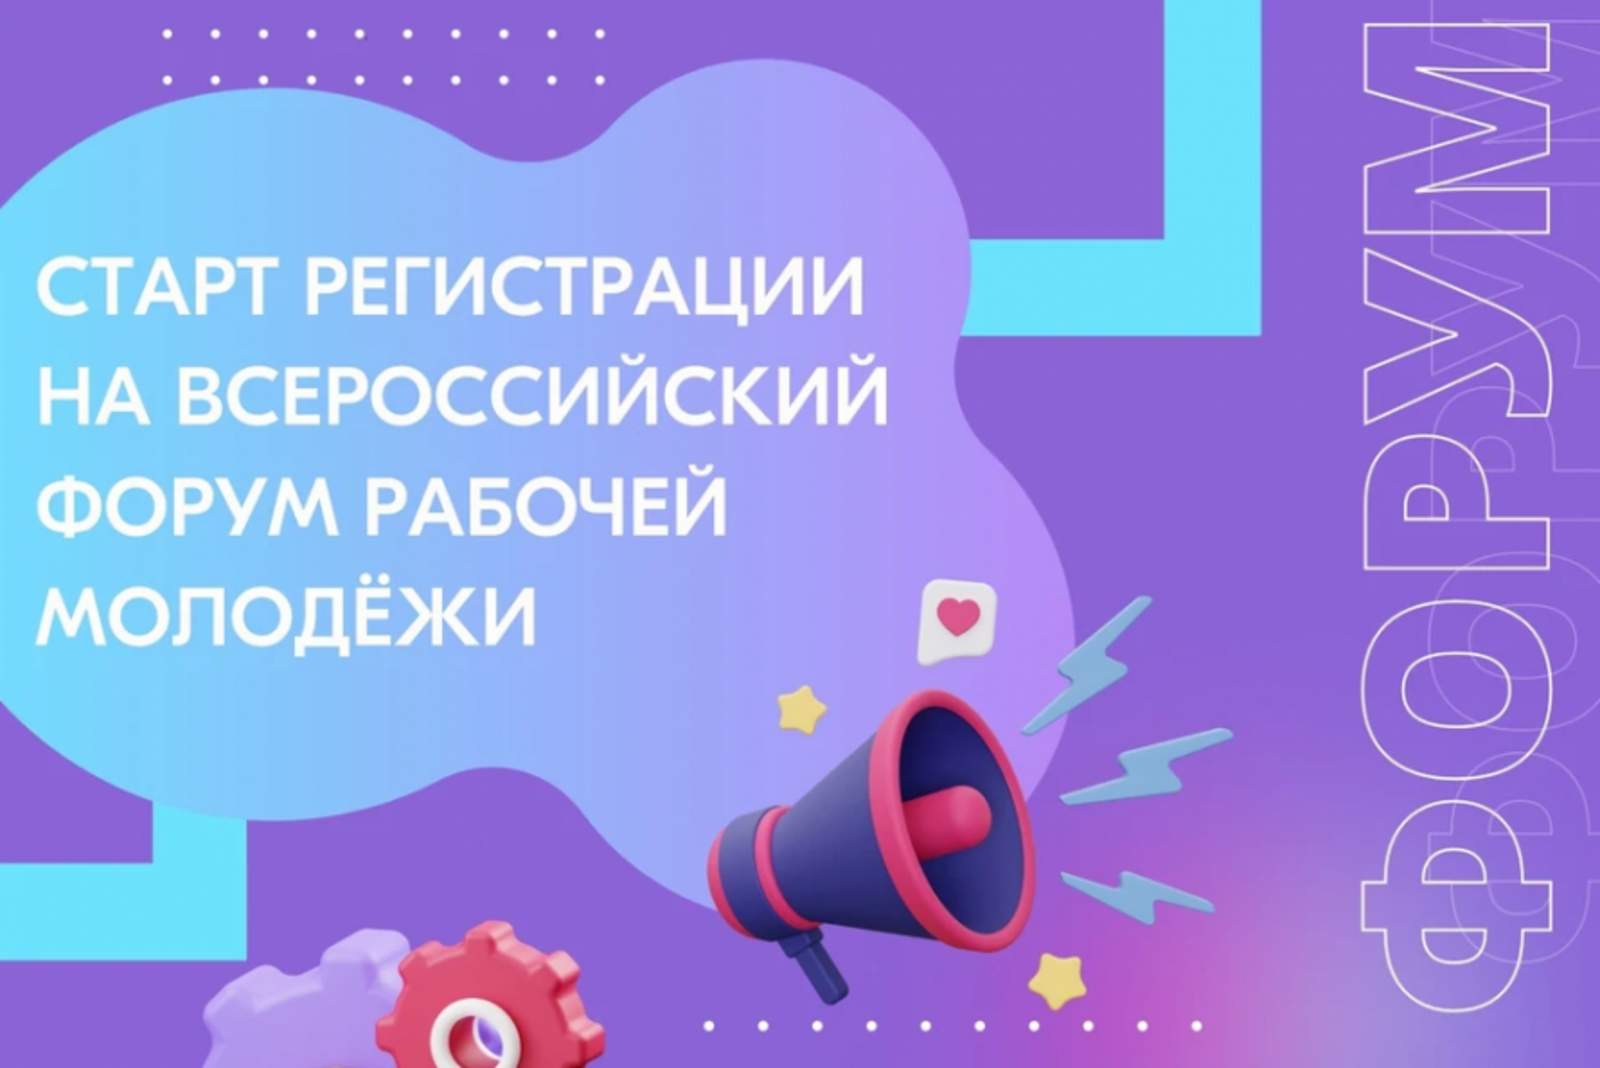 Специалисты Башкортостана смогут принять участие во Всероссийском форуме рабочей молодёжи